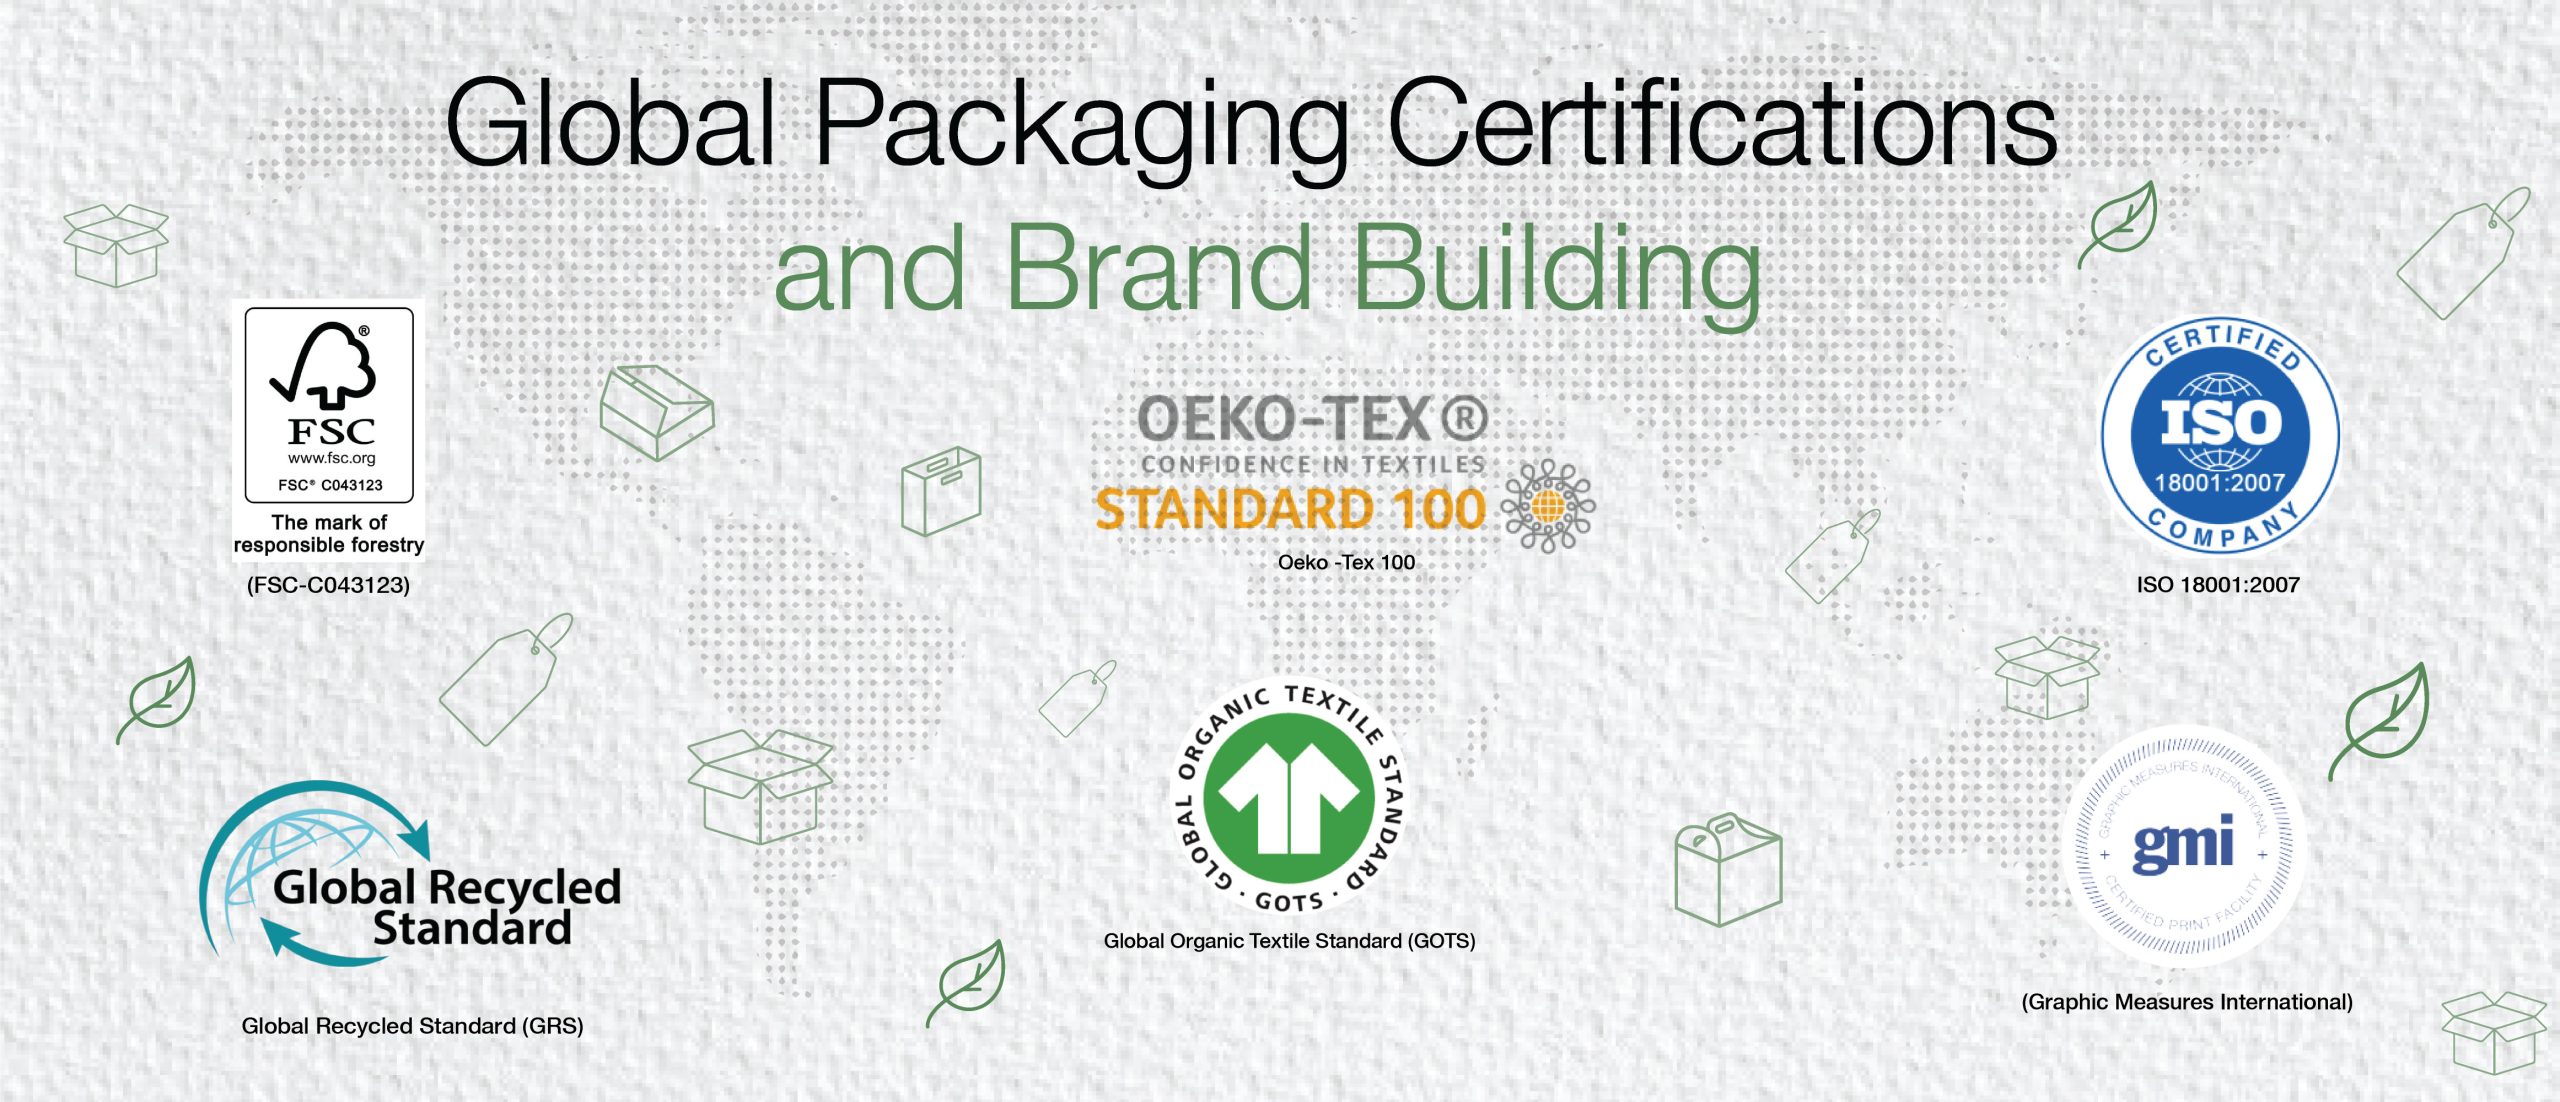 Global Packaging Certifications